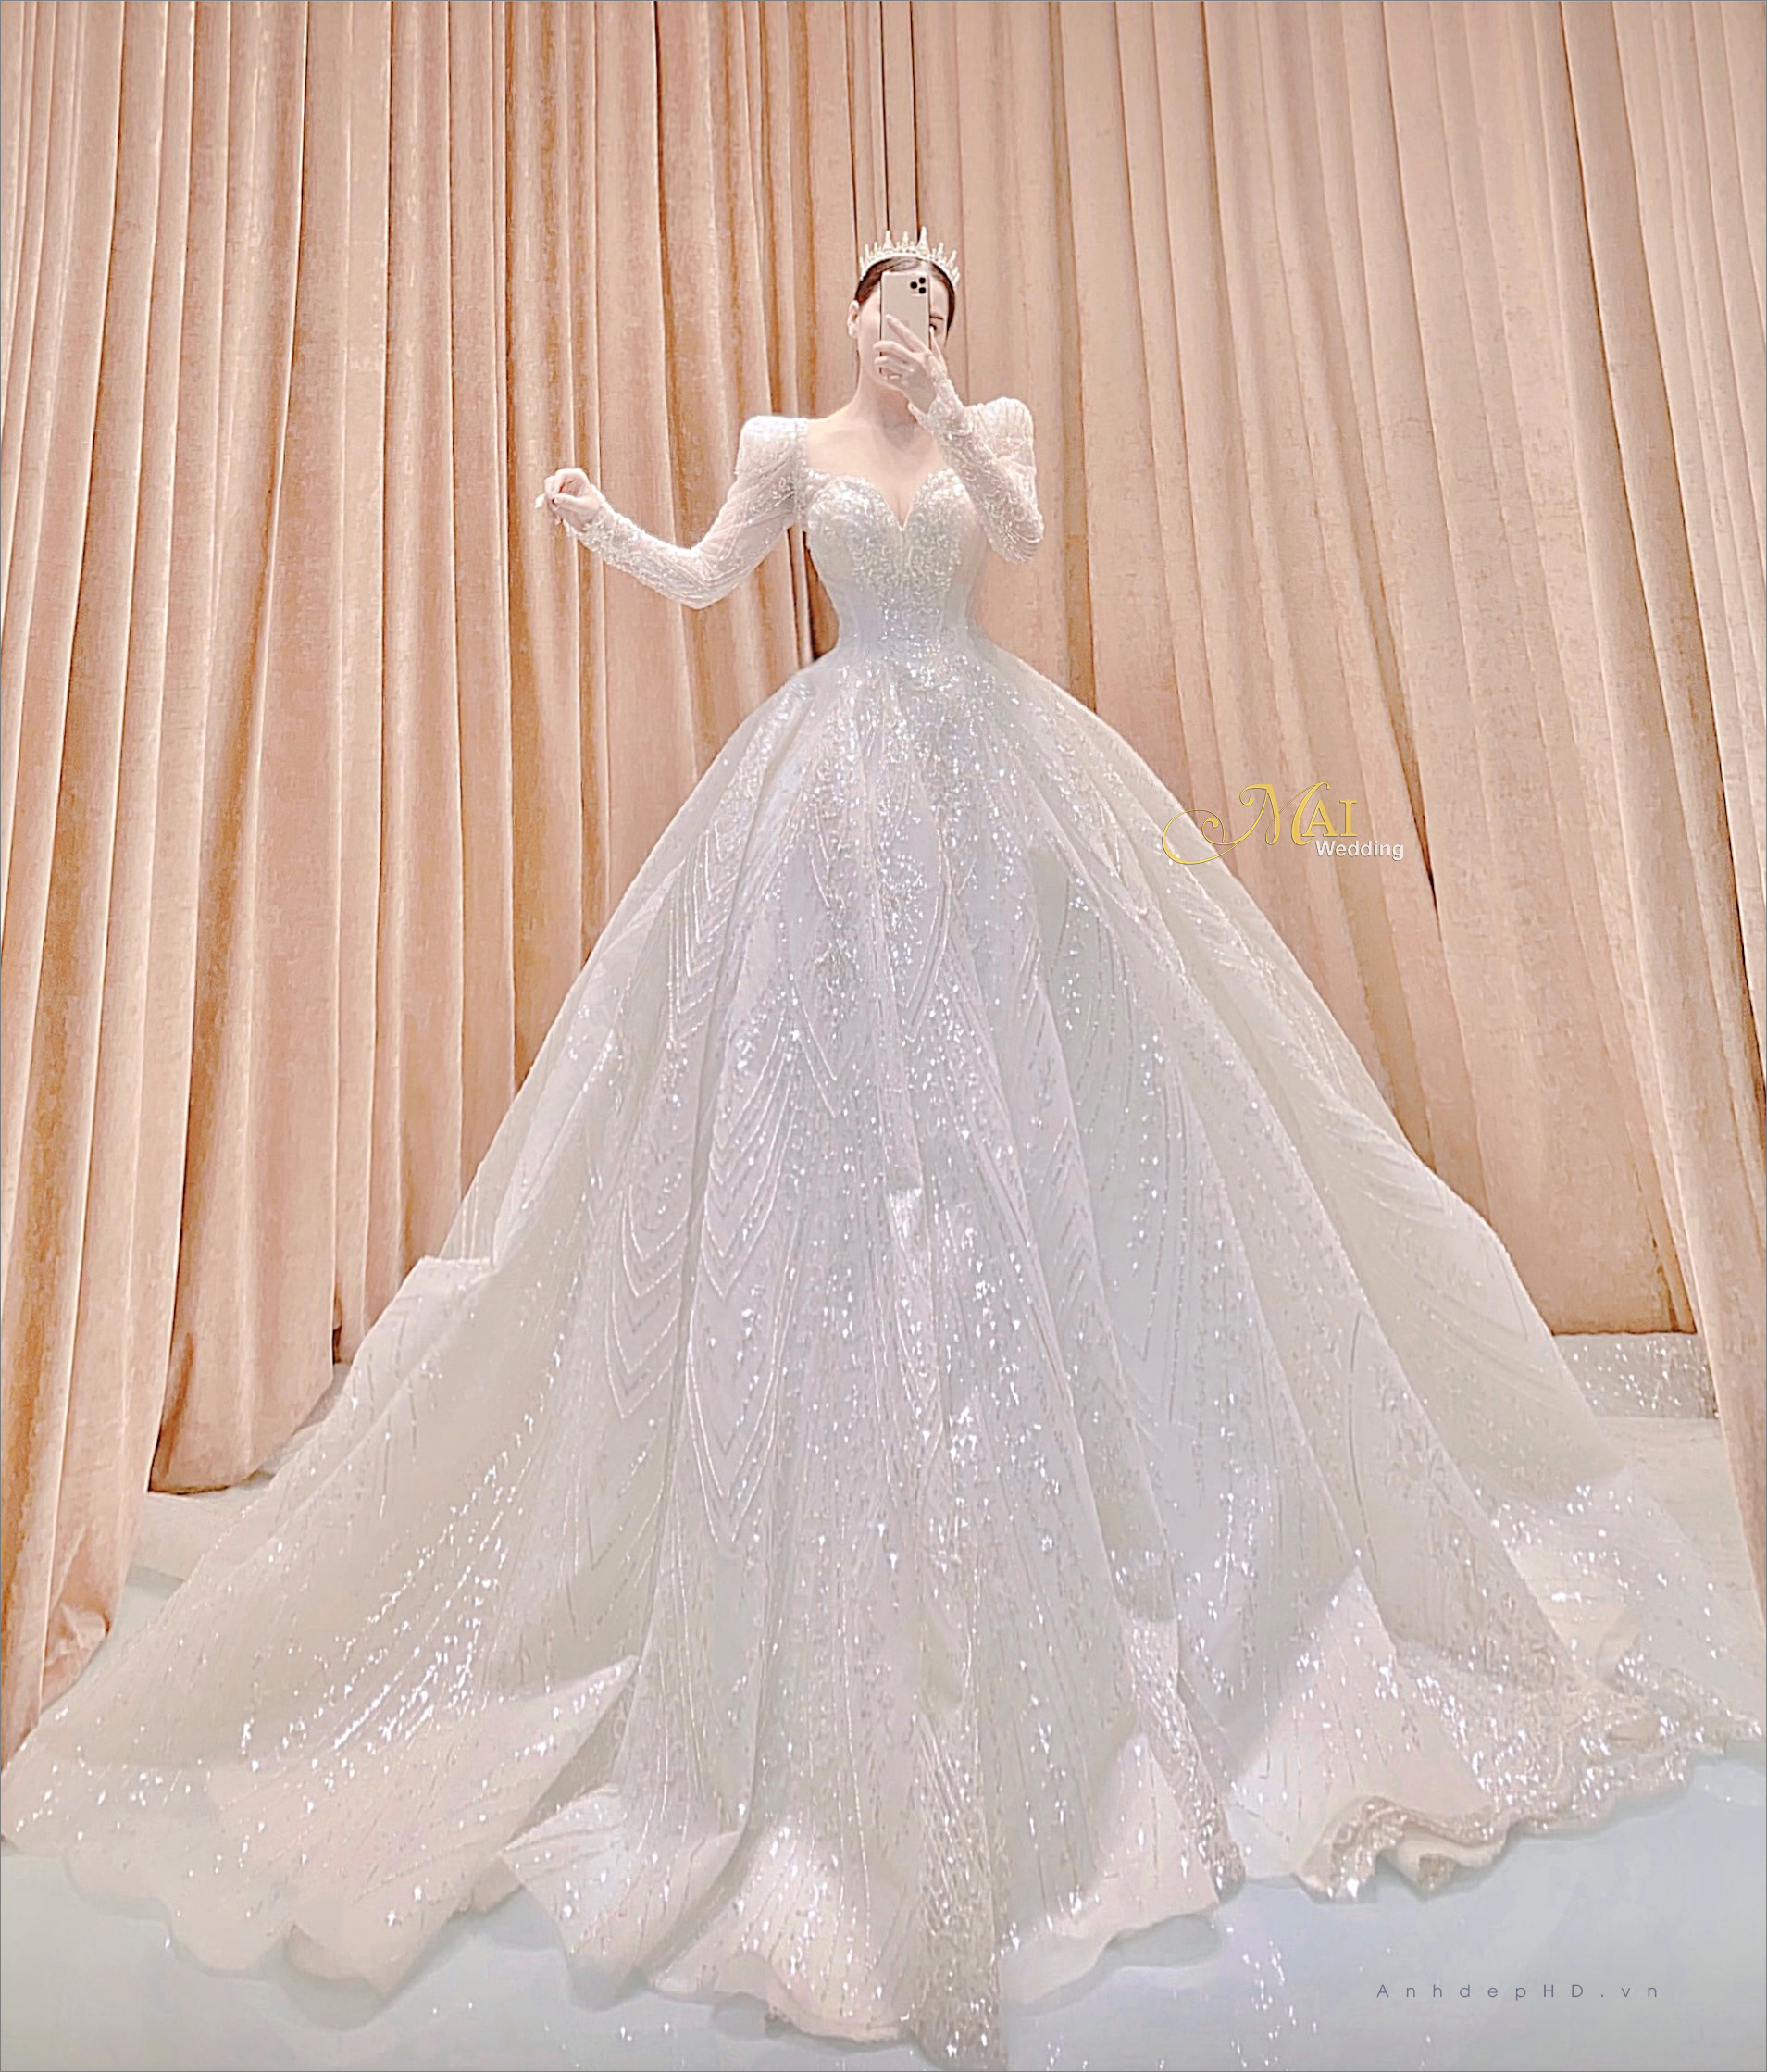 Tổng hợp 100 kiểu váy cưới đơn giản nhẹ nhàng và tinh tế  Veronica  Wedding Thương hiệu số 1 về áo khỏa